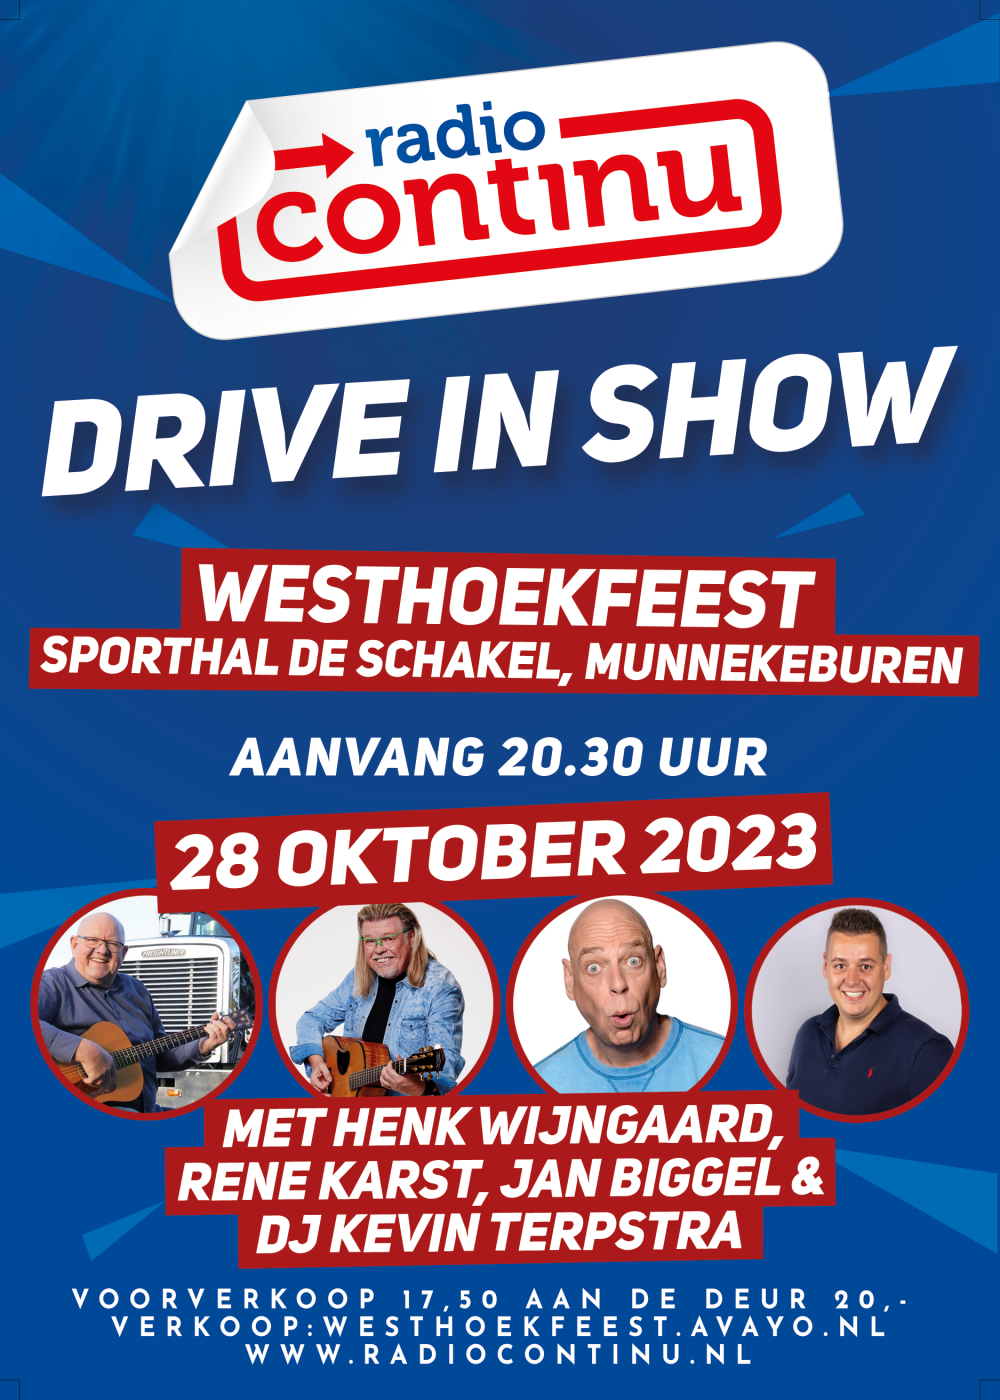 28-10-23: Drive in Show Westhoekfeest Munnekeburen